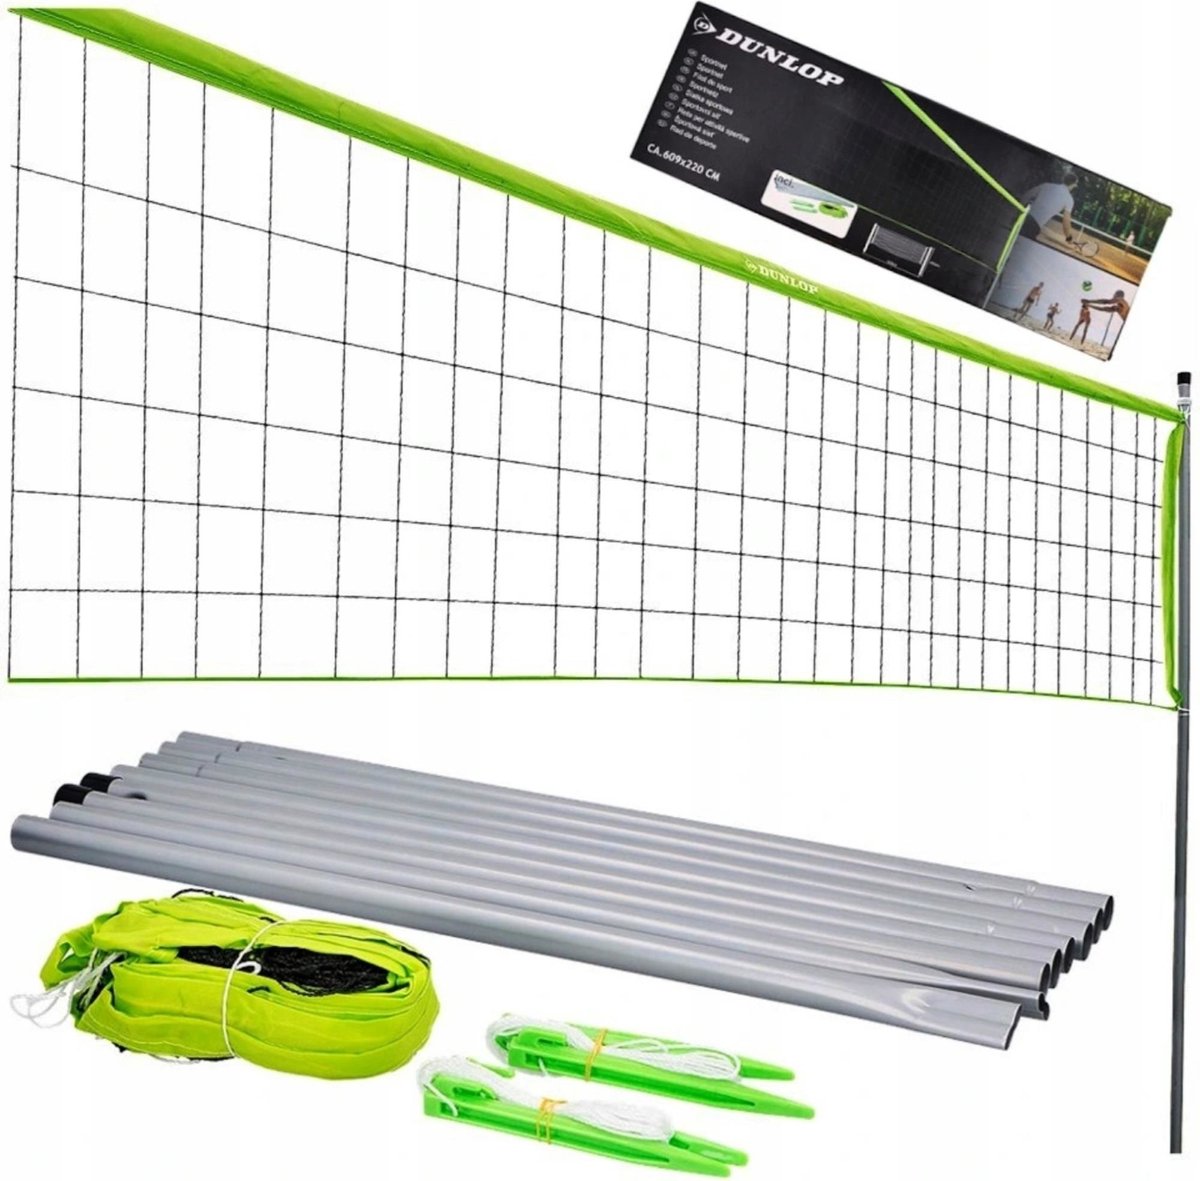 Dunlop Sportnet 609 x 220 CM - Volleybalnet - Tennisnet - Badmintonnet - Complete Set met Stokken, Net, Grondpinnen en Spanner Touwen - Multifunctioneel Inzetbaar - Groen/Zwart - Dunlop